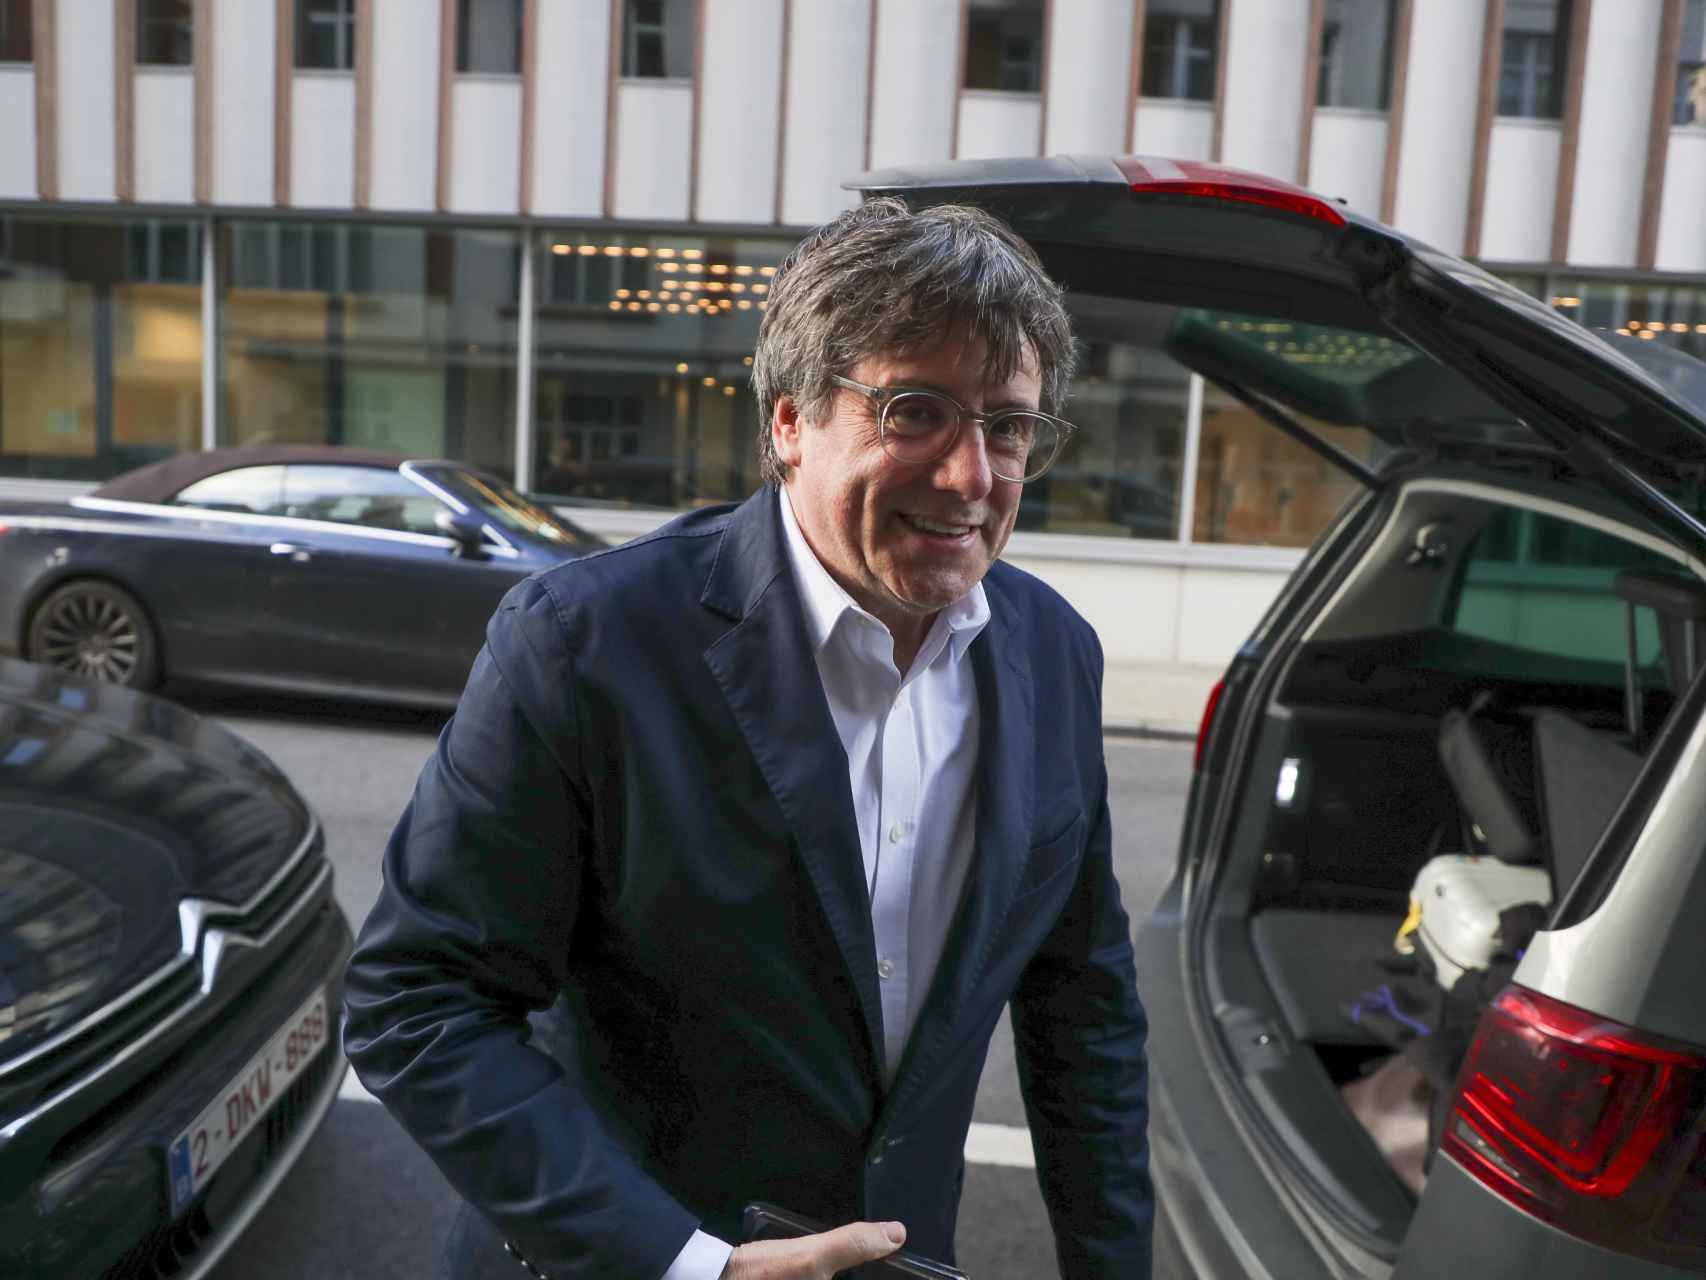 Carles Puigdemont, eurodiputado y expresident catalán huido de la Justicia, carga su coche en Bruselas.